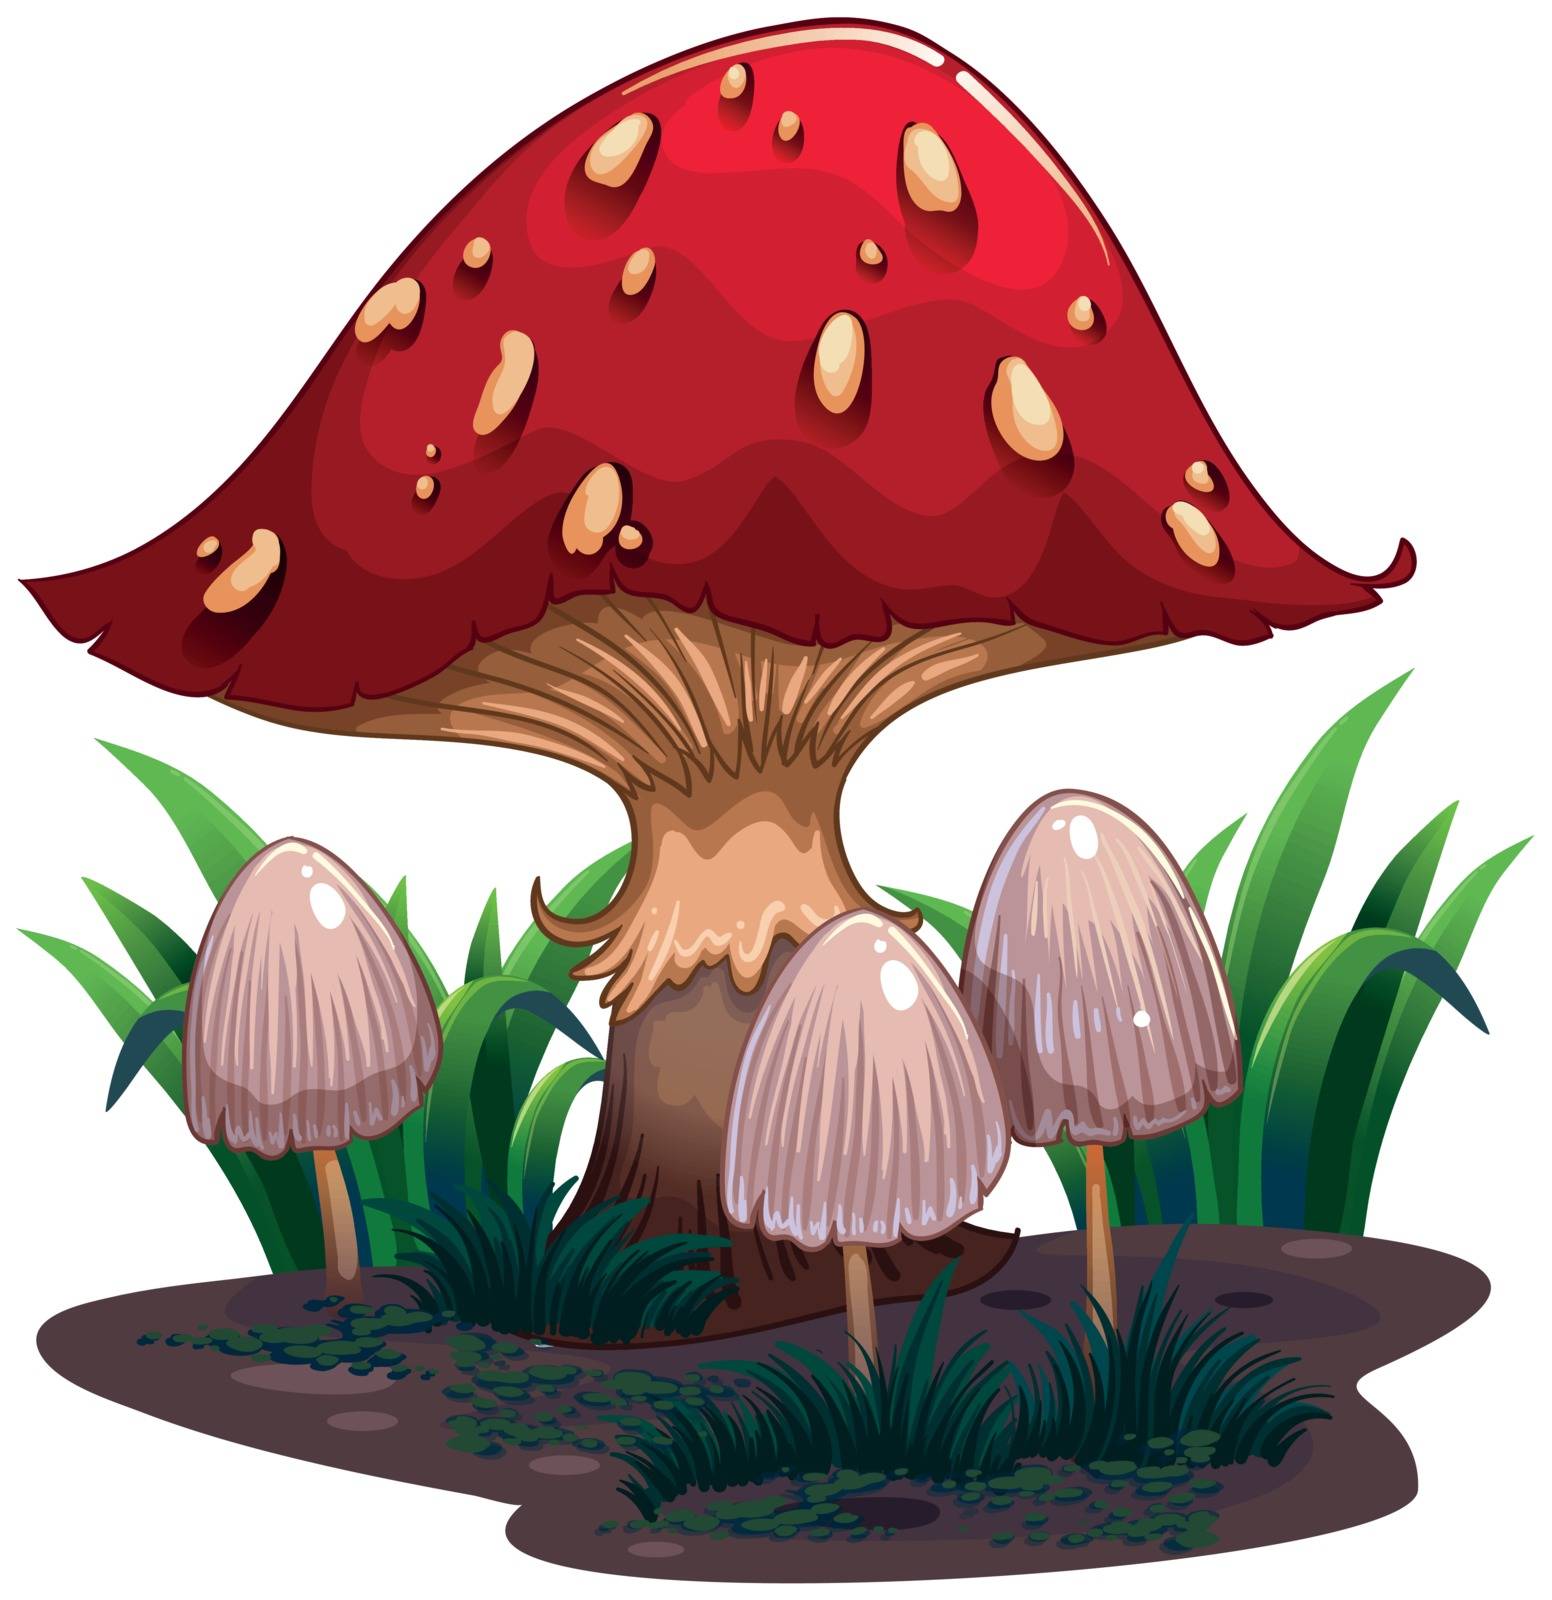 An image of a huge mushroom by iimages